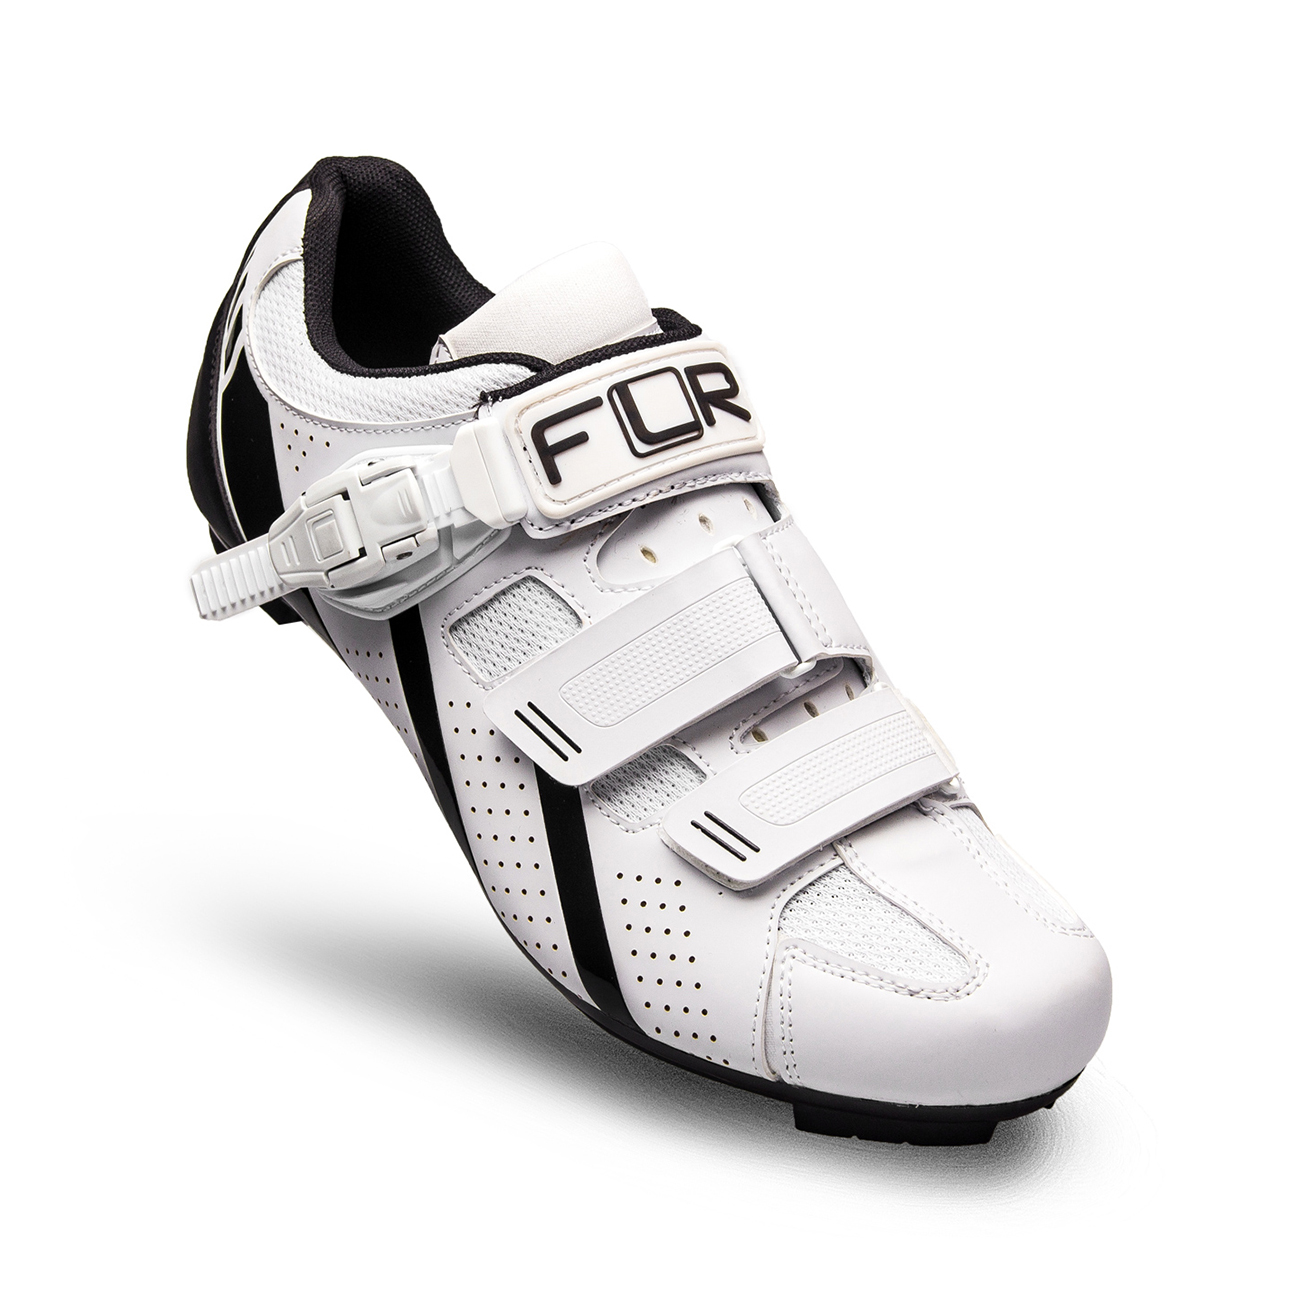 
                FLR Cyklistické tretry - F15 - čierna/biela 46
            